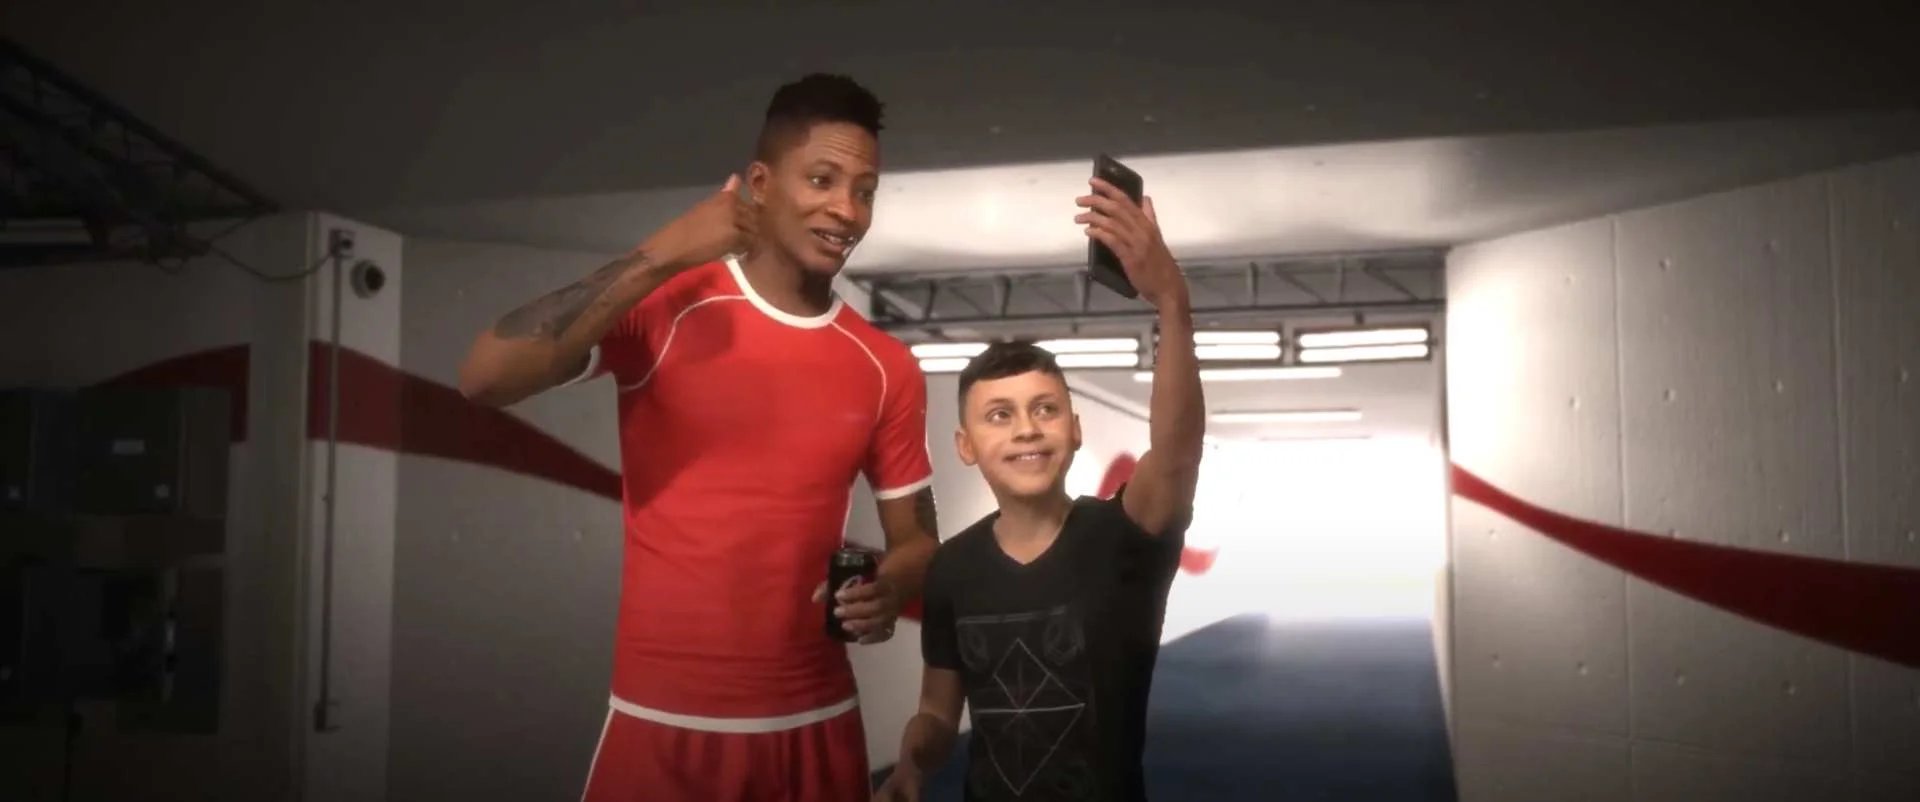 По сюжету рекламного ролика внутри FIFA 18 мальчик предлагает звезде футбола газировку. В знак признательности Алекс Хантер фотографируется с фанатом / Скриншот из видео-прохождения с канала Laughing Coyote